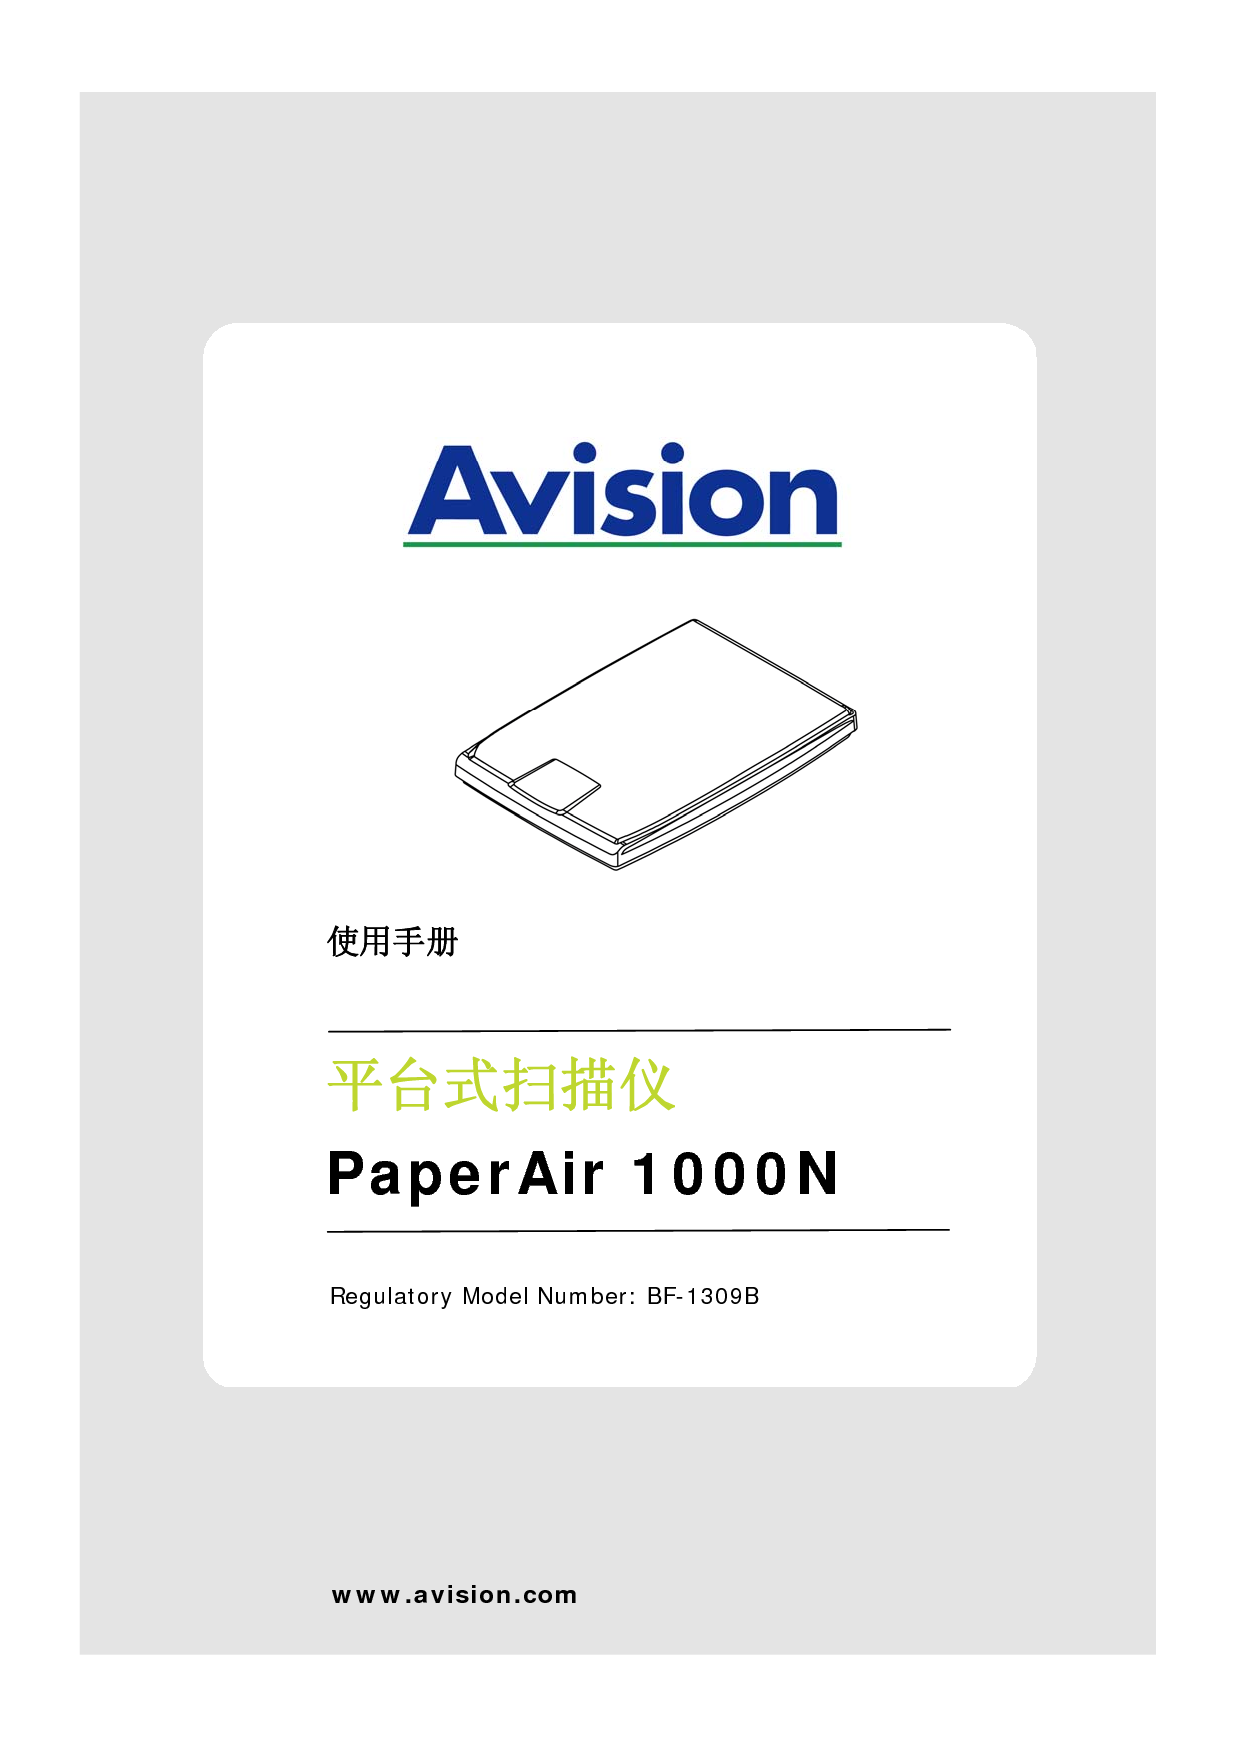 虹光 Avision PaperAir 1000N 使用手册 封面